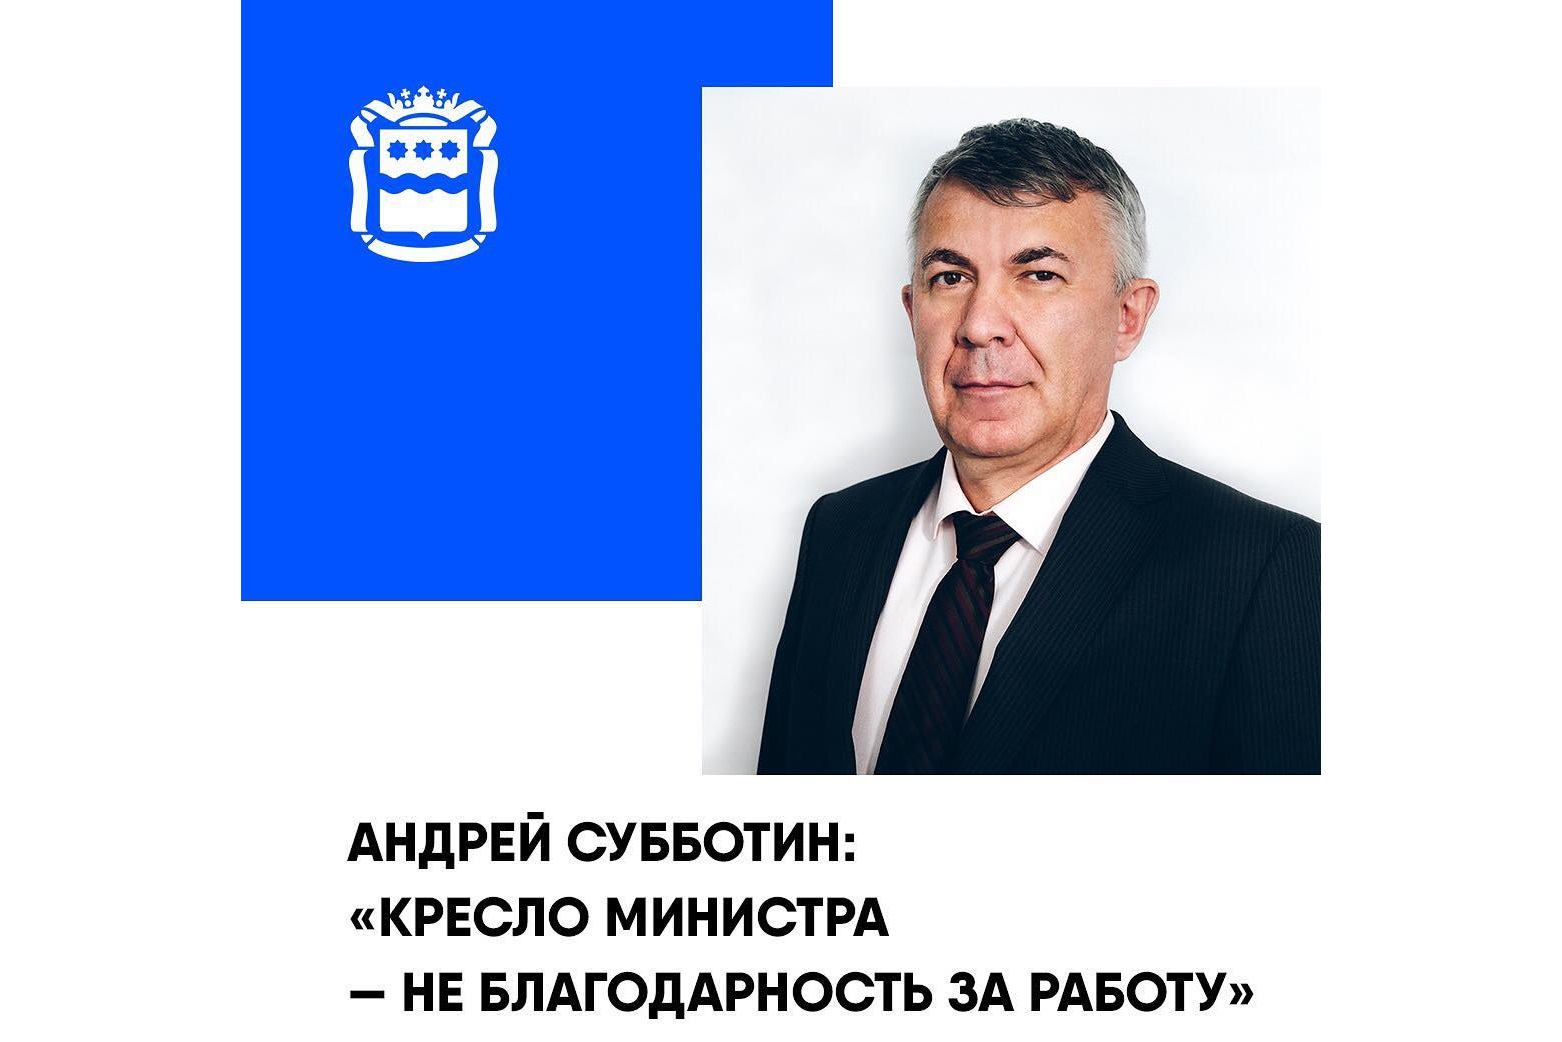 Алексей Субботин: "Кресло министра - не благодарность за работу"